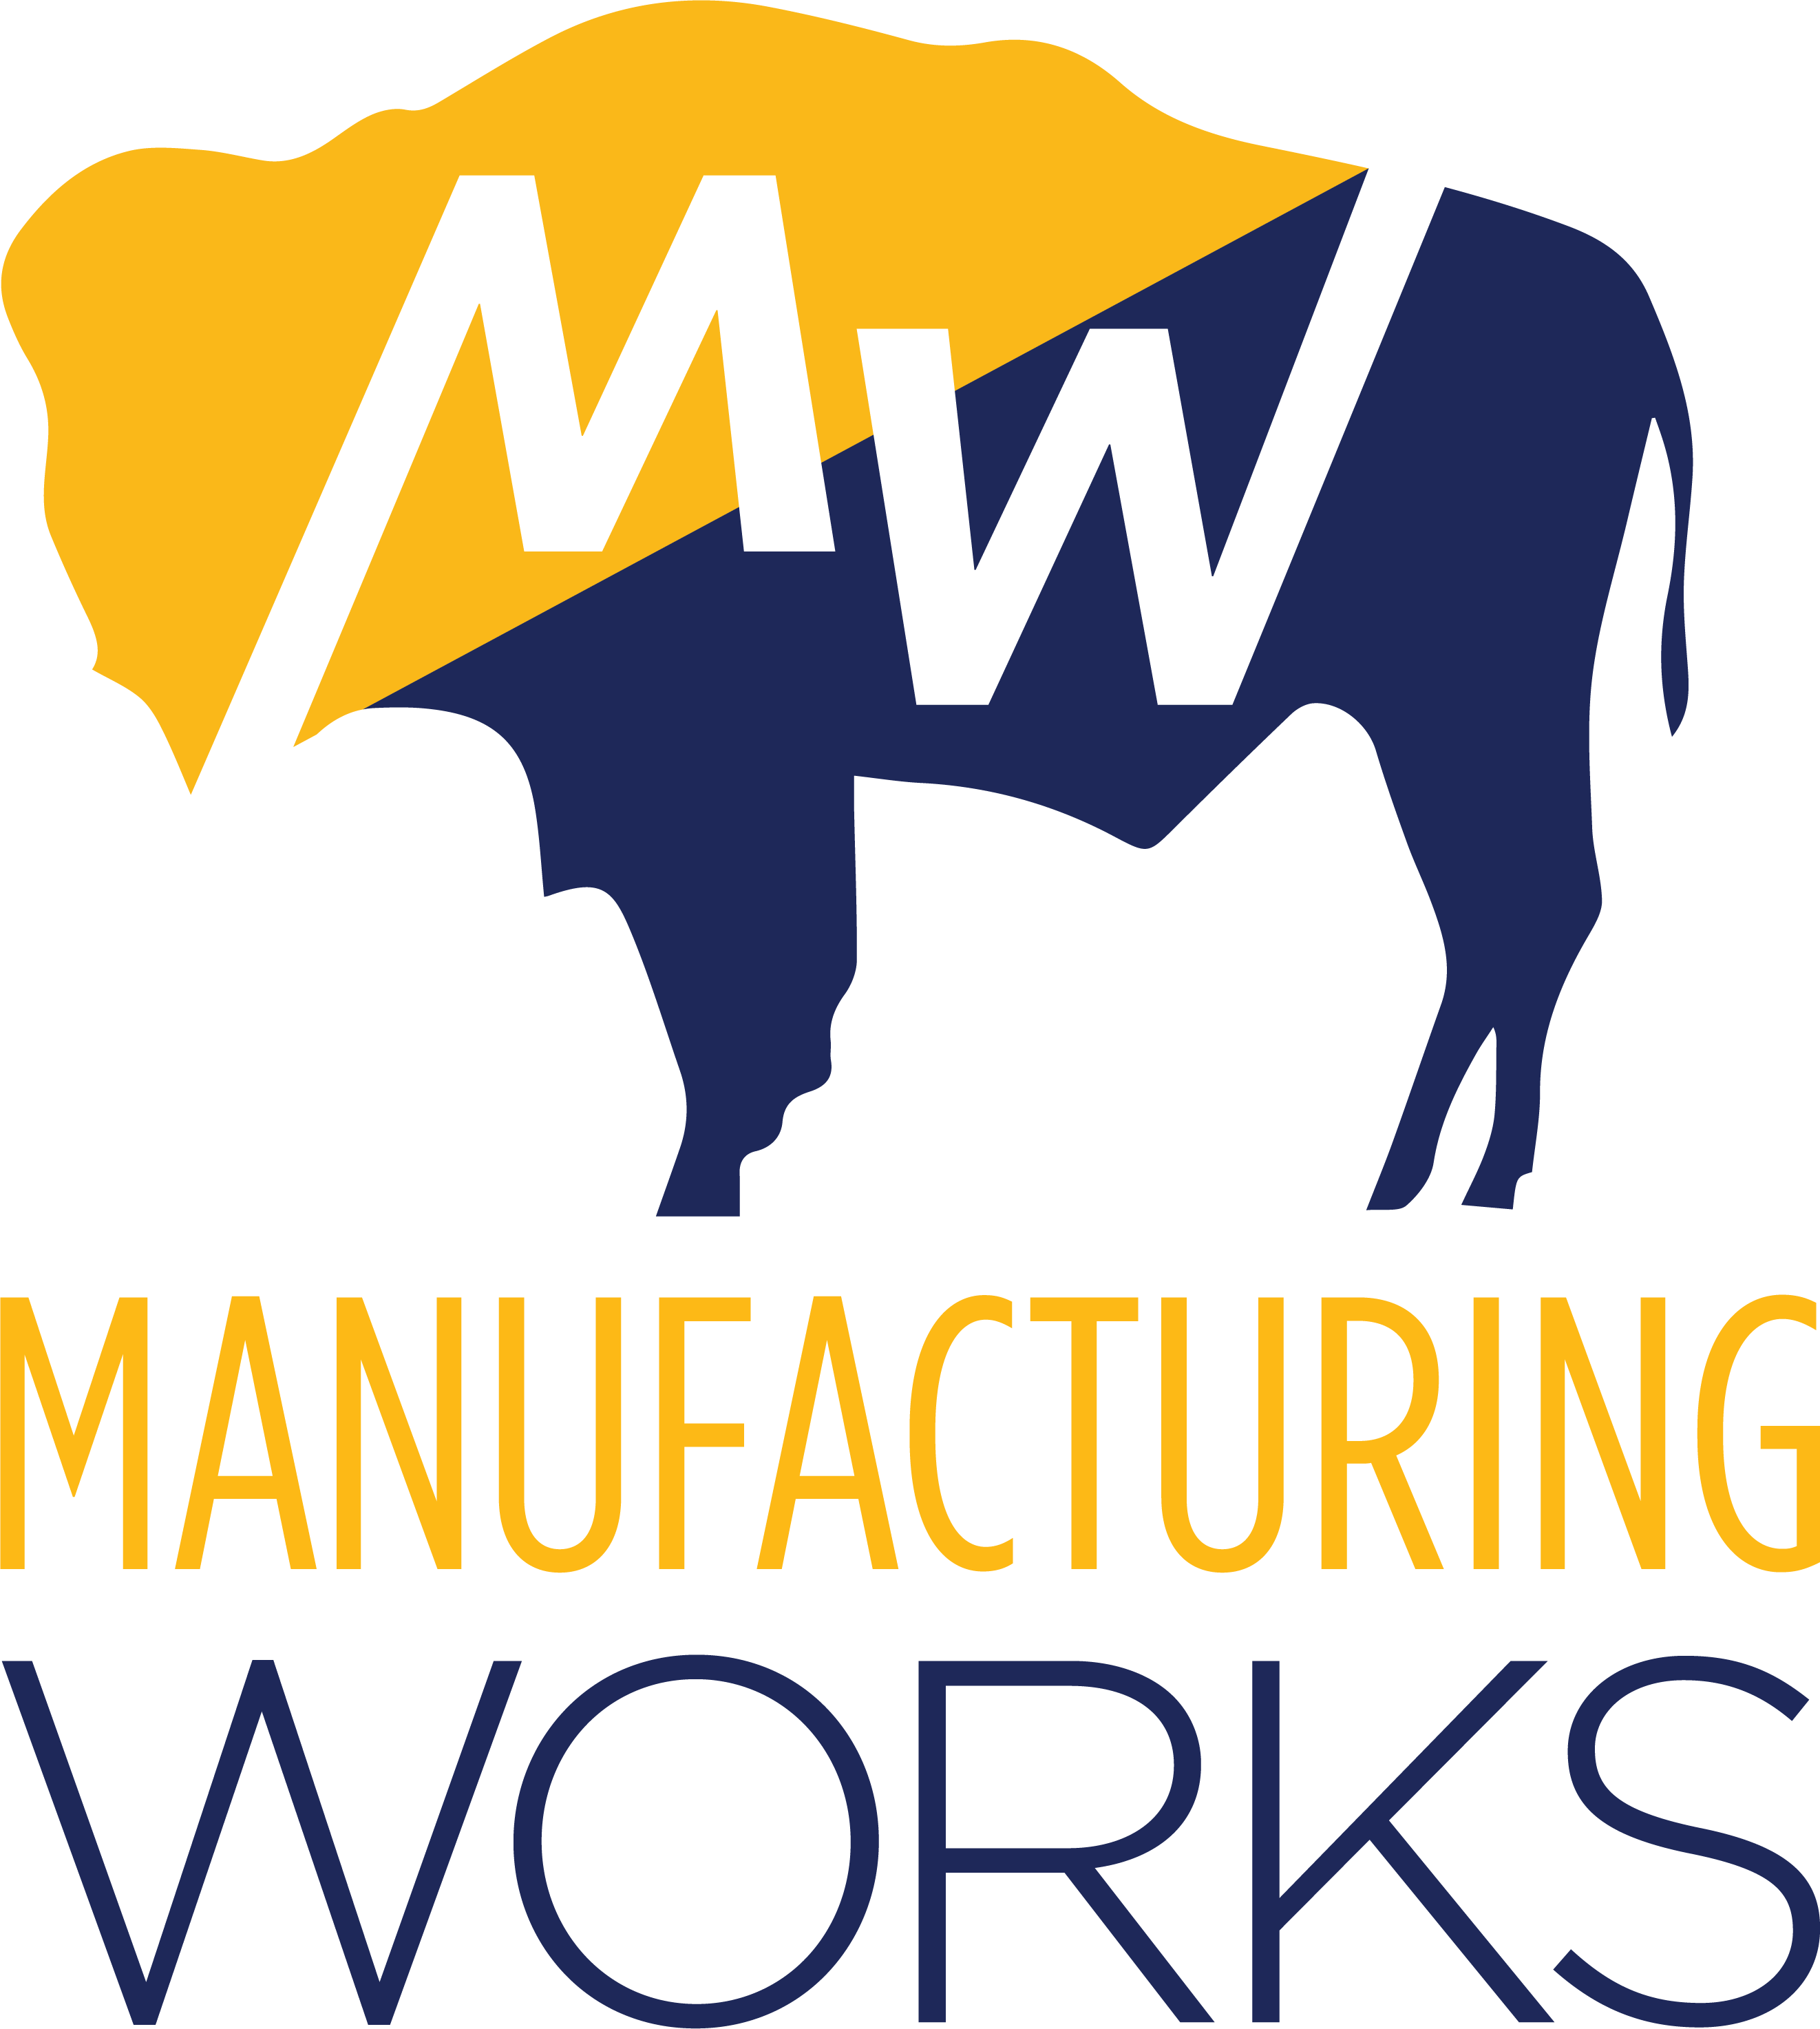 Manufacturing Works logo